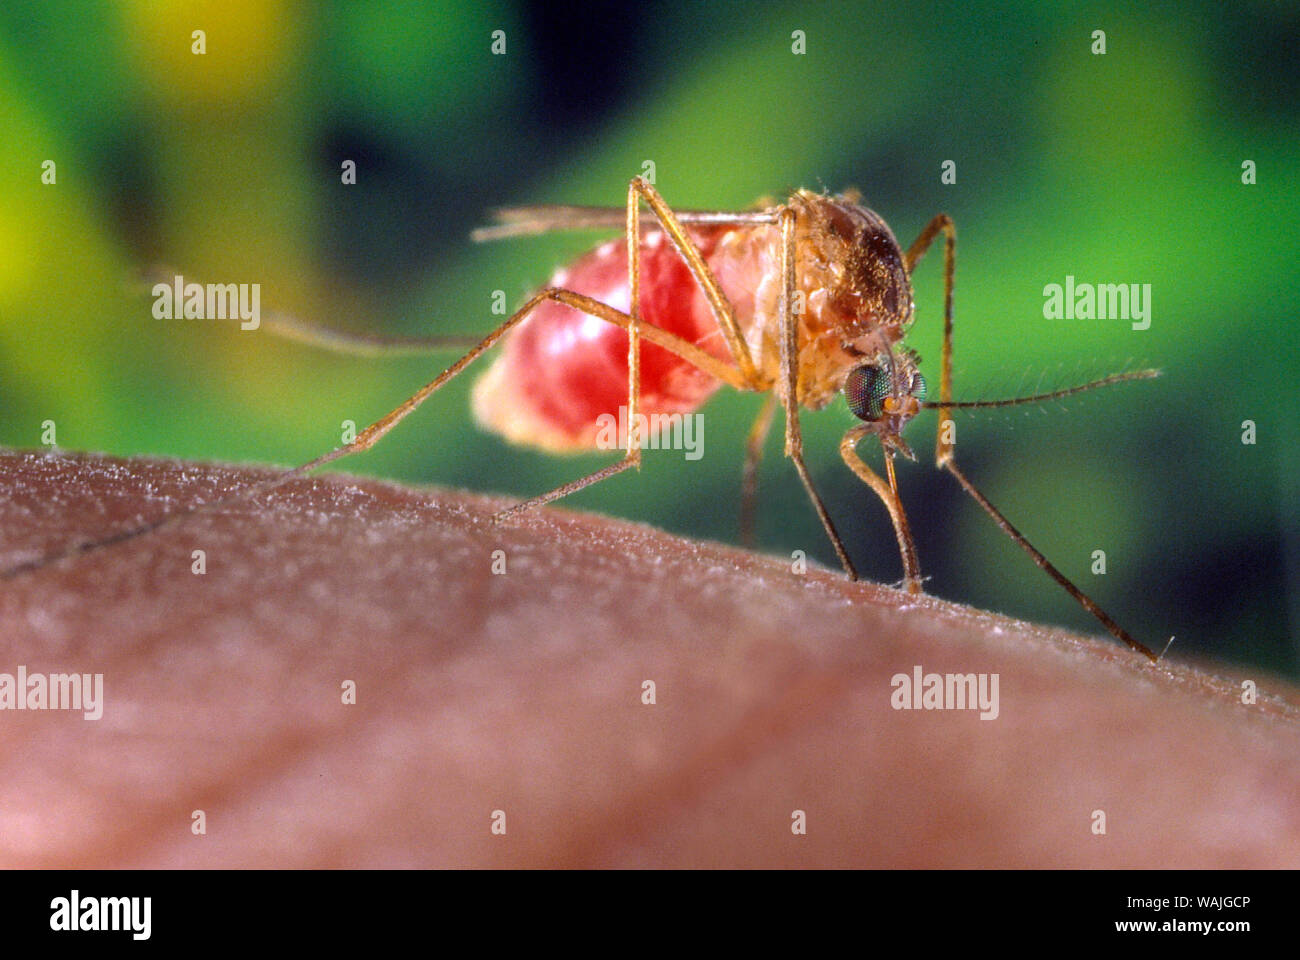 2001 - Dieses Bild zeigt eine Nahaufnahme rechts, anterior - Schrägansicht des Culex quinquefasciatus Moskito auf der Suche nach einer Blut essen von ihren menschlichen Wirt. In dieser Ansicht sind Sie in der Lage, zu sehen, dass das Insekt Bauch Rot gedreht hatte, jetzt mit Blut von seinem Host gefüllt. C. quinquefasciatus ist ein Vektor mit dem arboviral Übertragung des West-Nil-Virus. Stockfoto